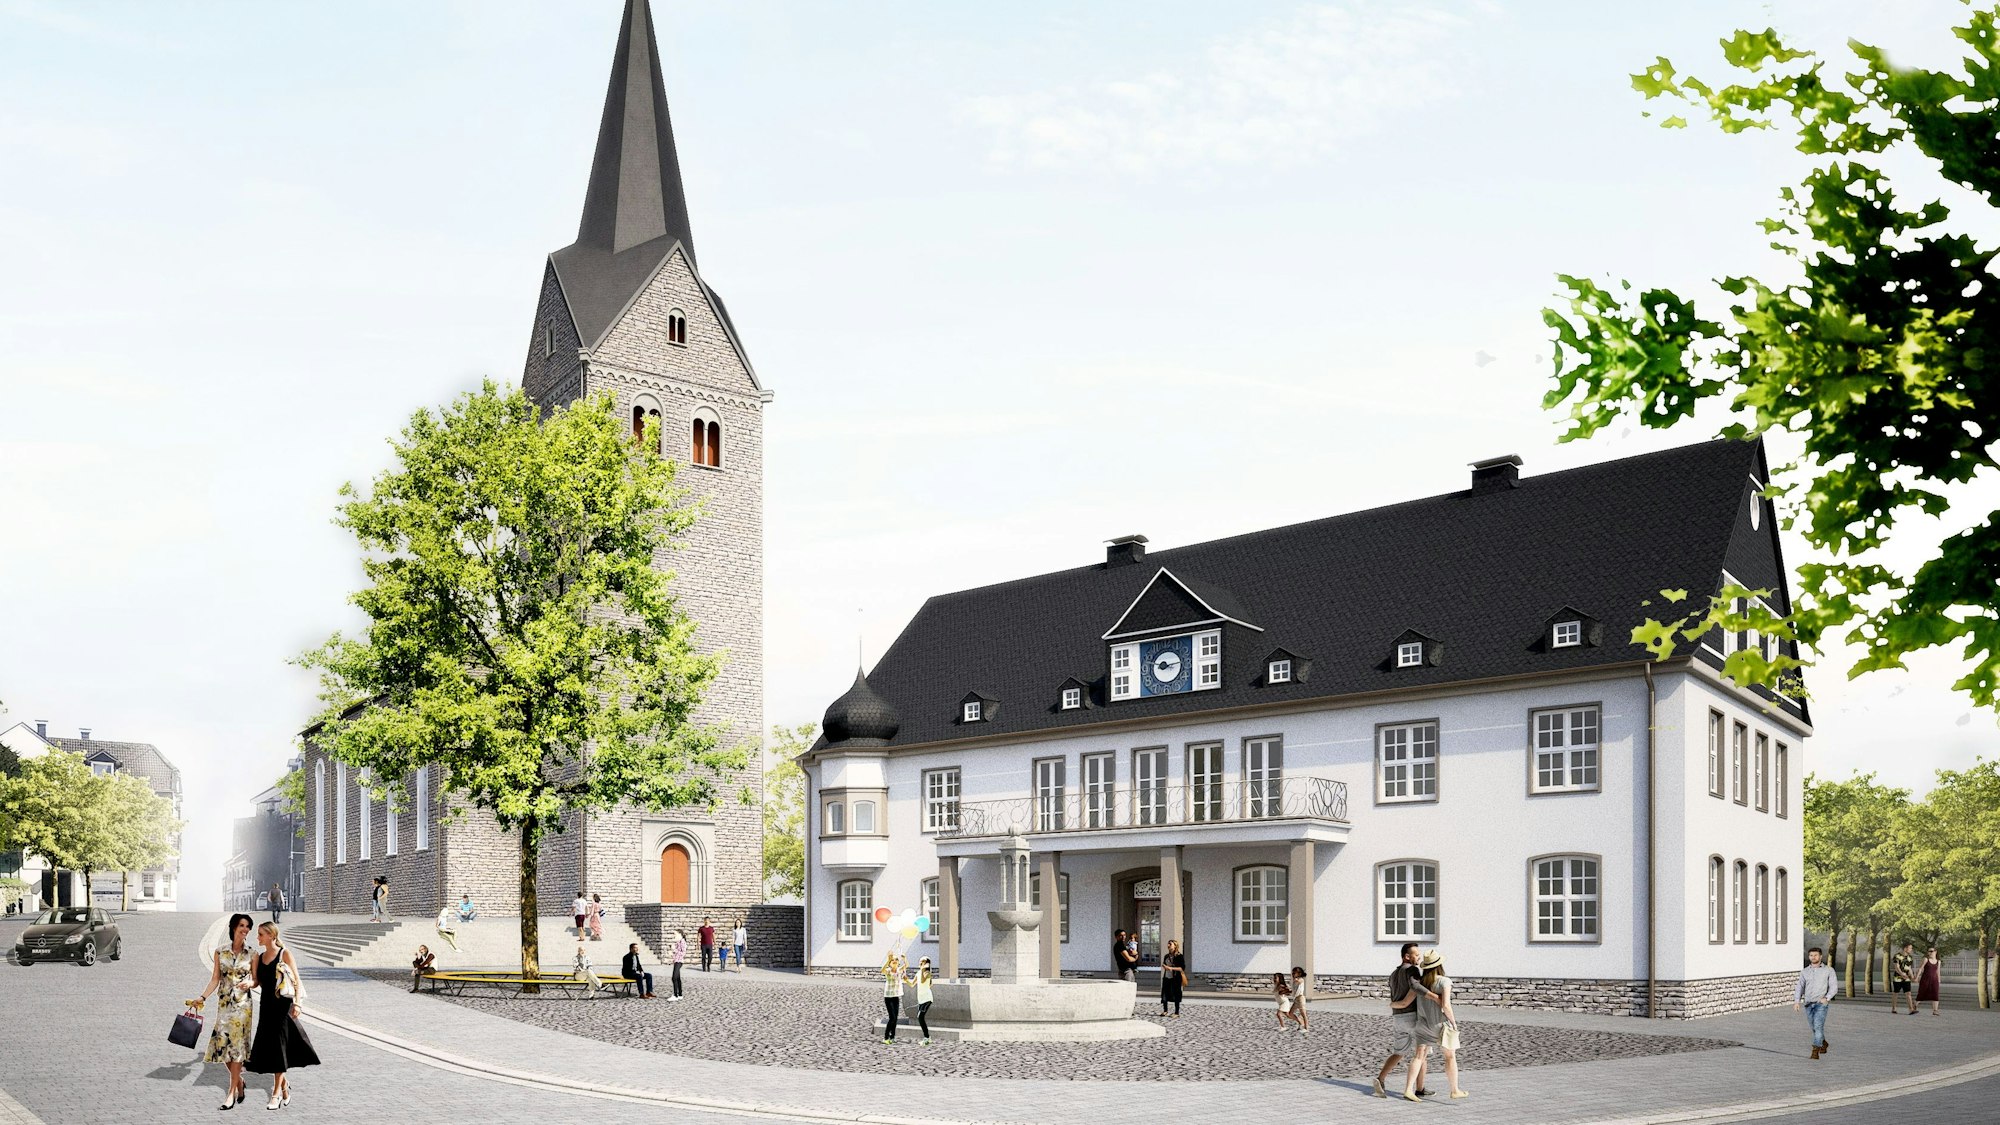 Auf einer Grafik ist das Stadtzentrum von Wiehl mit Rathaus und Kirche zu sehen, wie es nach der aktuellen Sanierung aussehen soll. Hell und mit Bäumen begrünt.